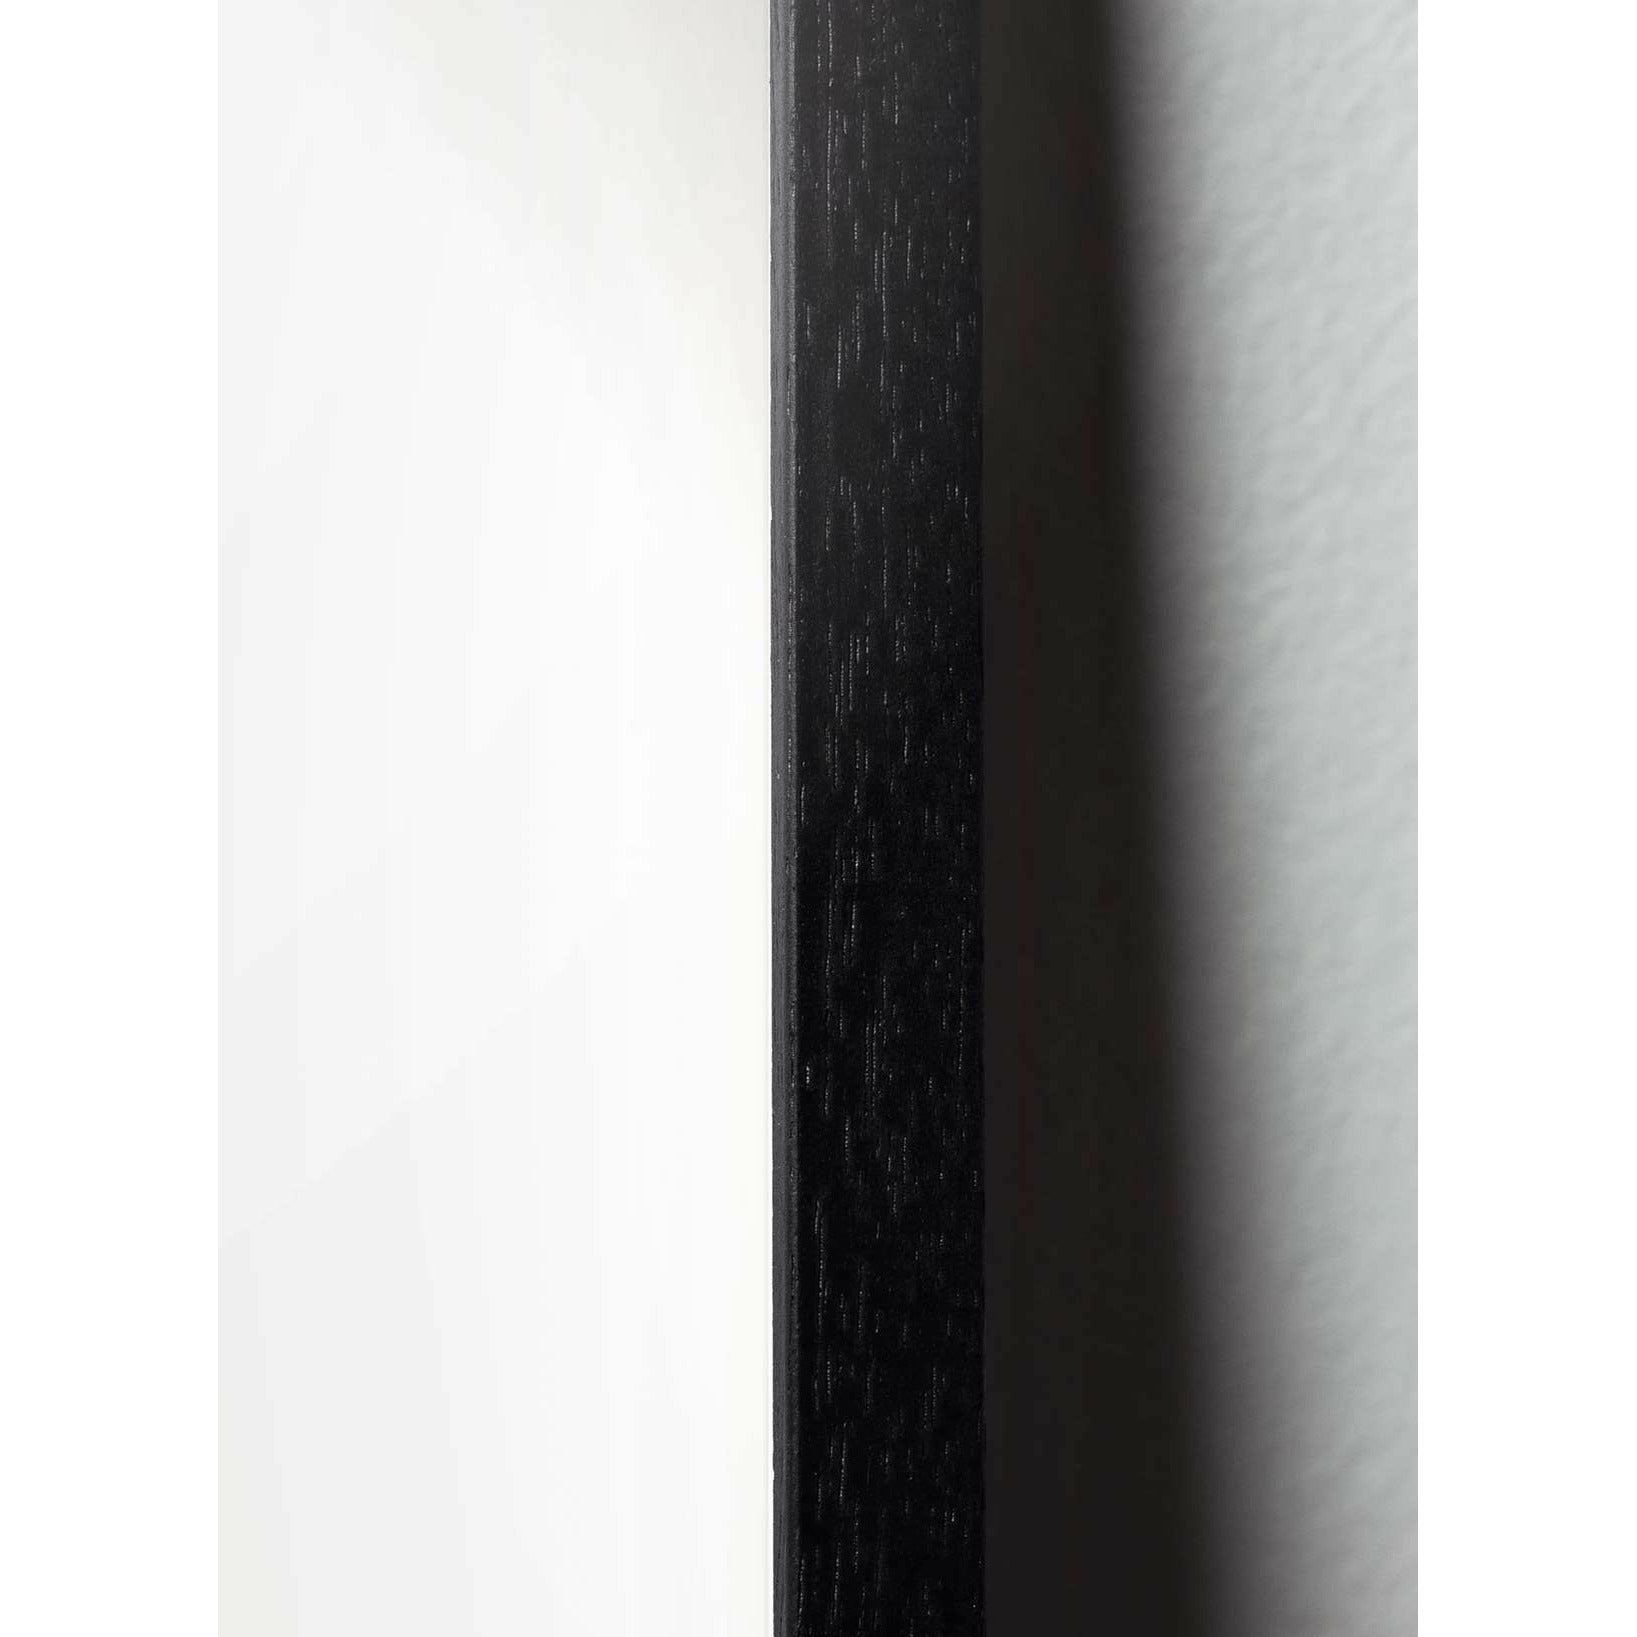 Plakat linii kropli pomysłu, rama w czarnym lakierowanym drewnie 30x40 cm, białe tło